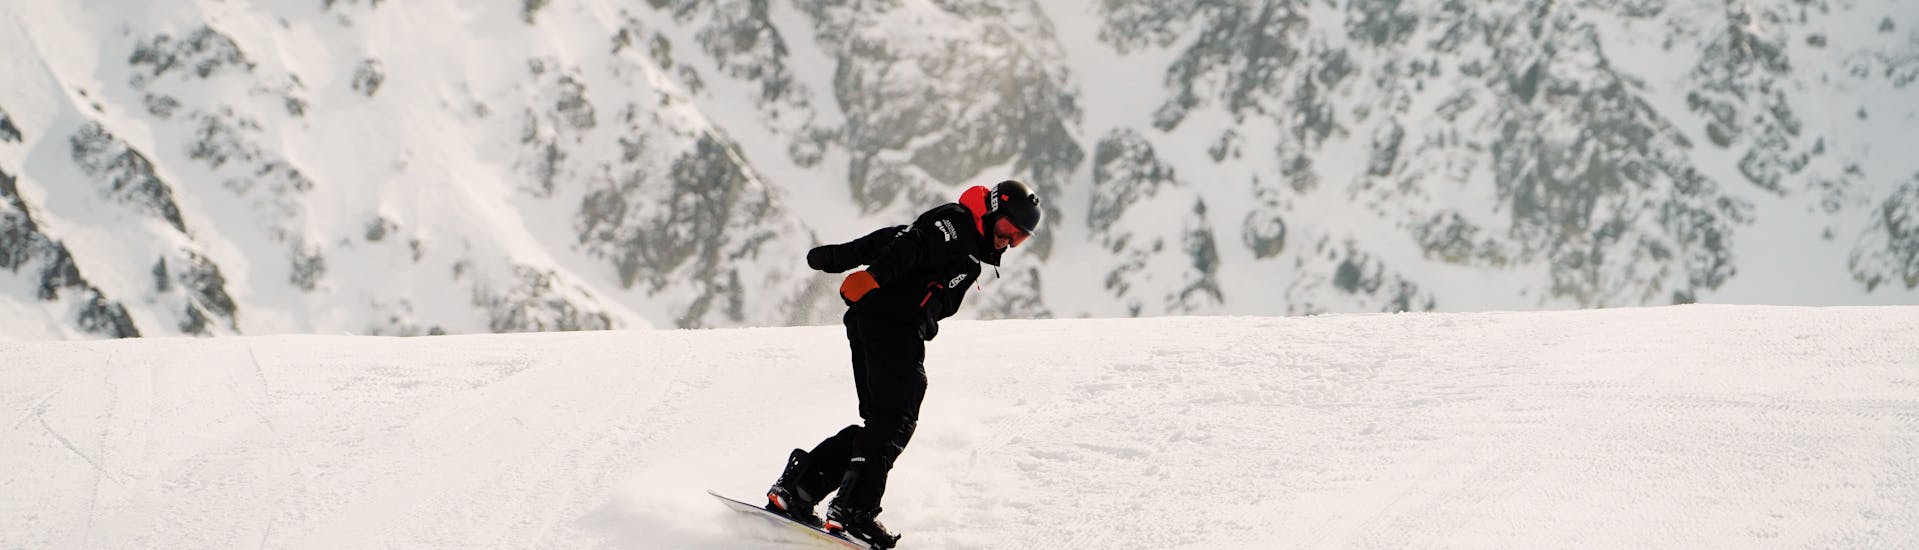 Clases particulares de snowboard para todas las edades.